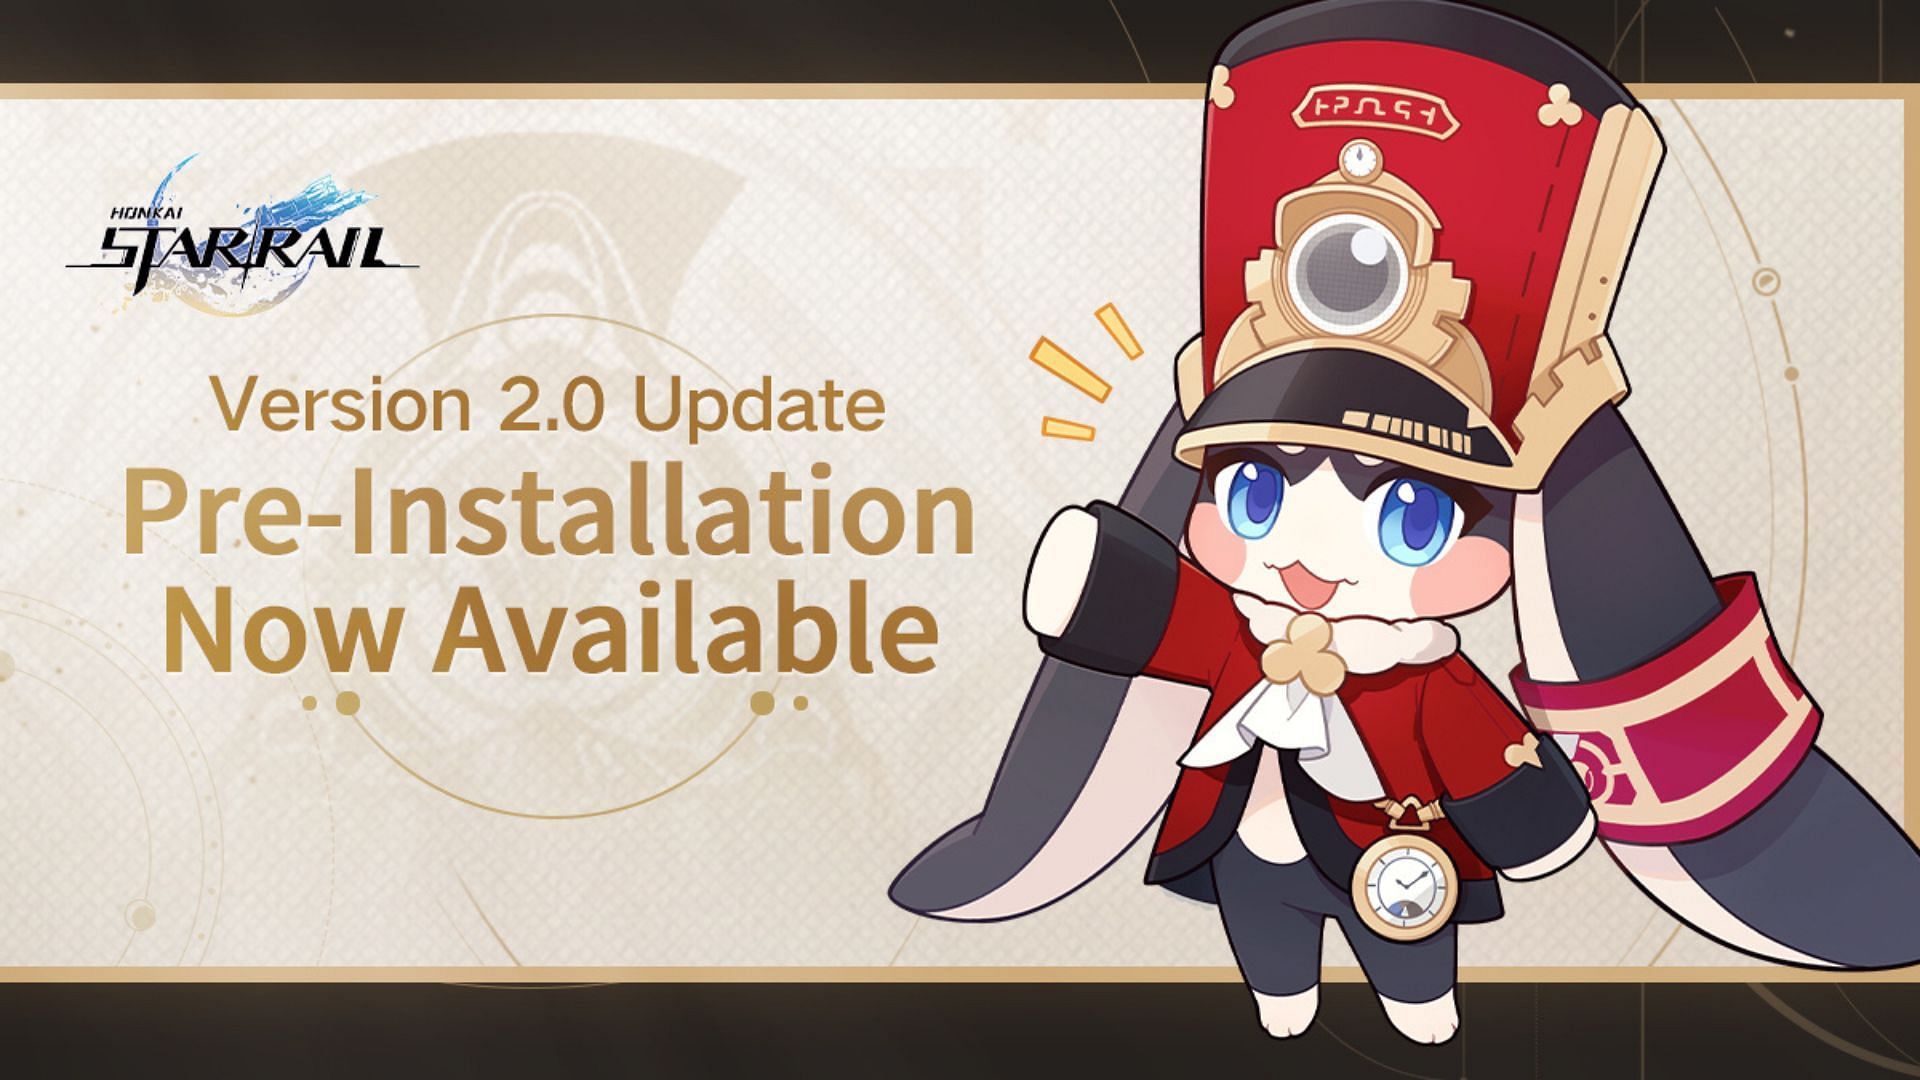 The Honkai Star Rail 2.0 Pre-Installation announcement